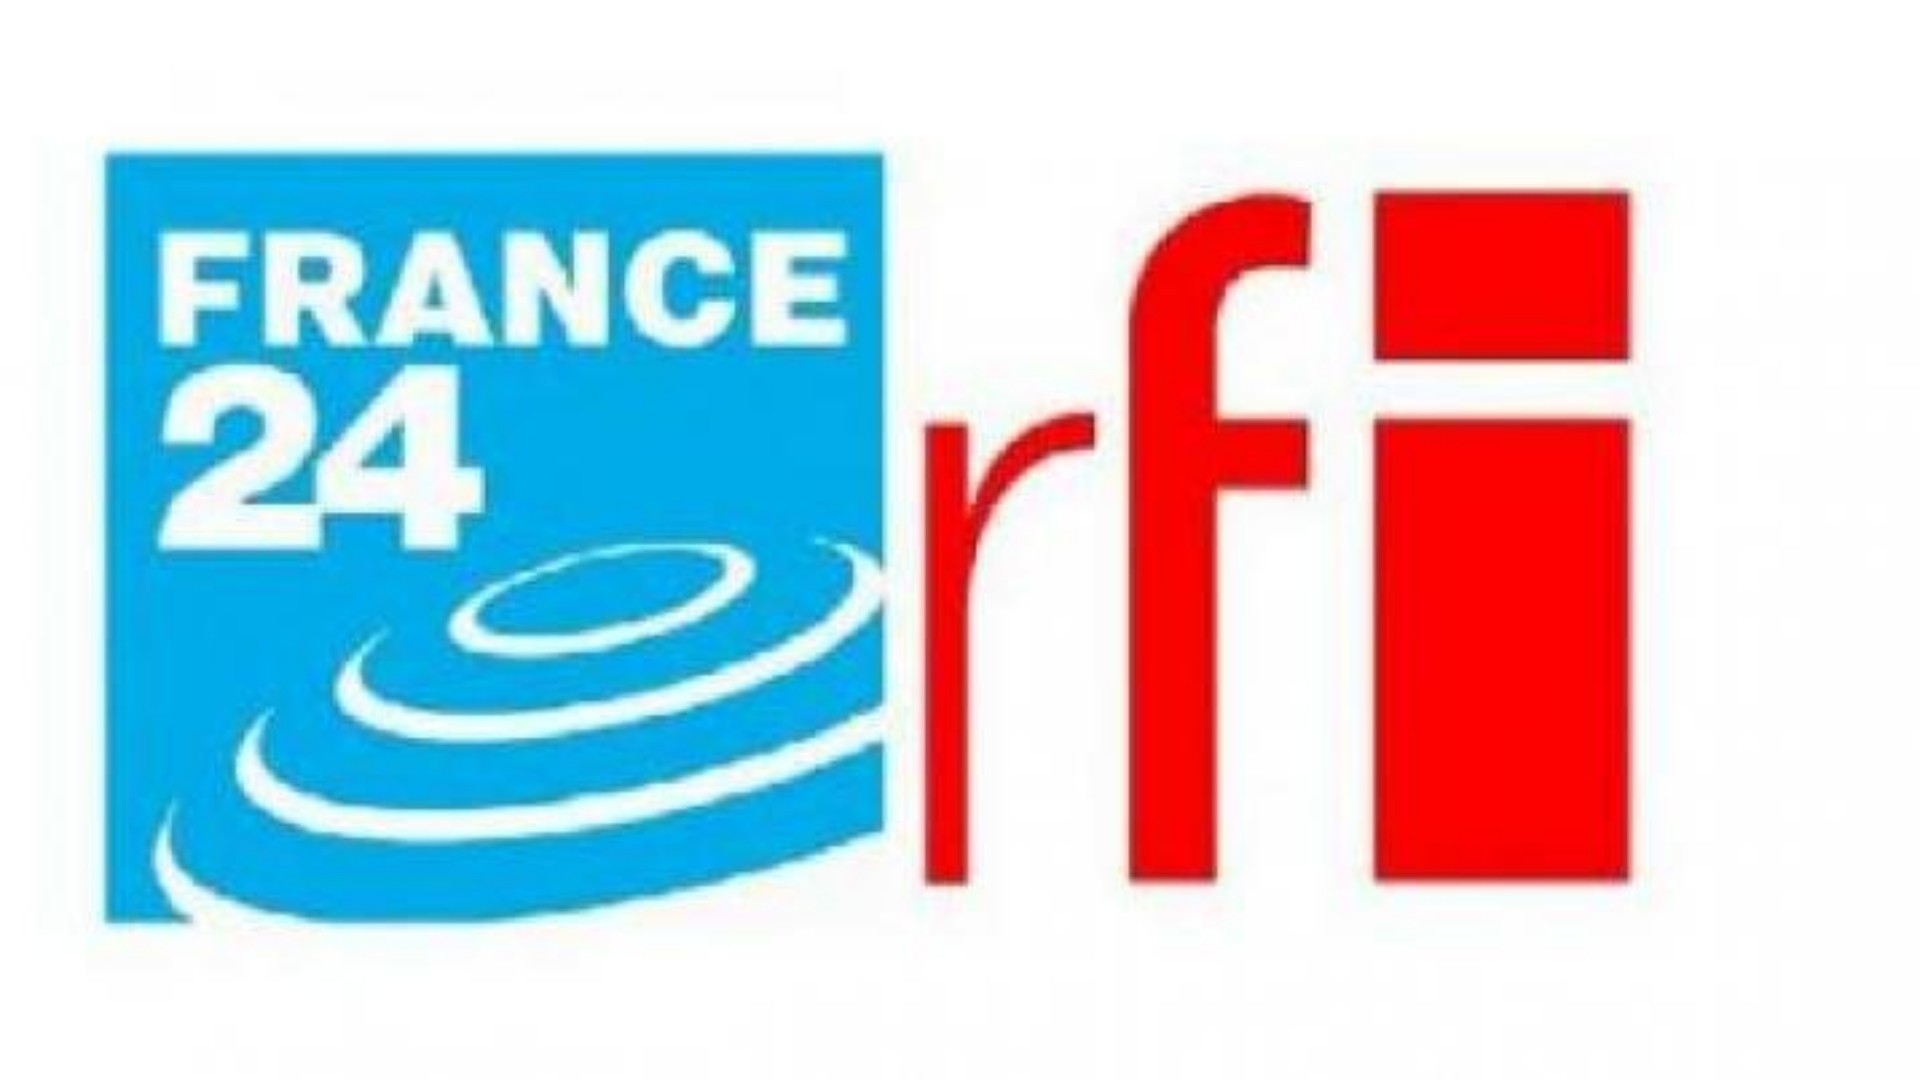 Crise post-électorale au Gabon: France 24, RFI et TV5 Monde suspendus de diffusion dans le pays